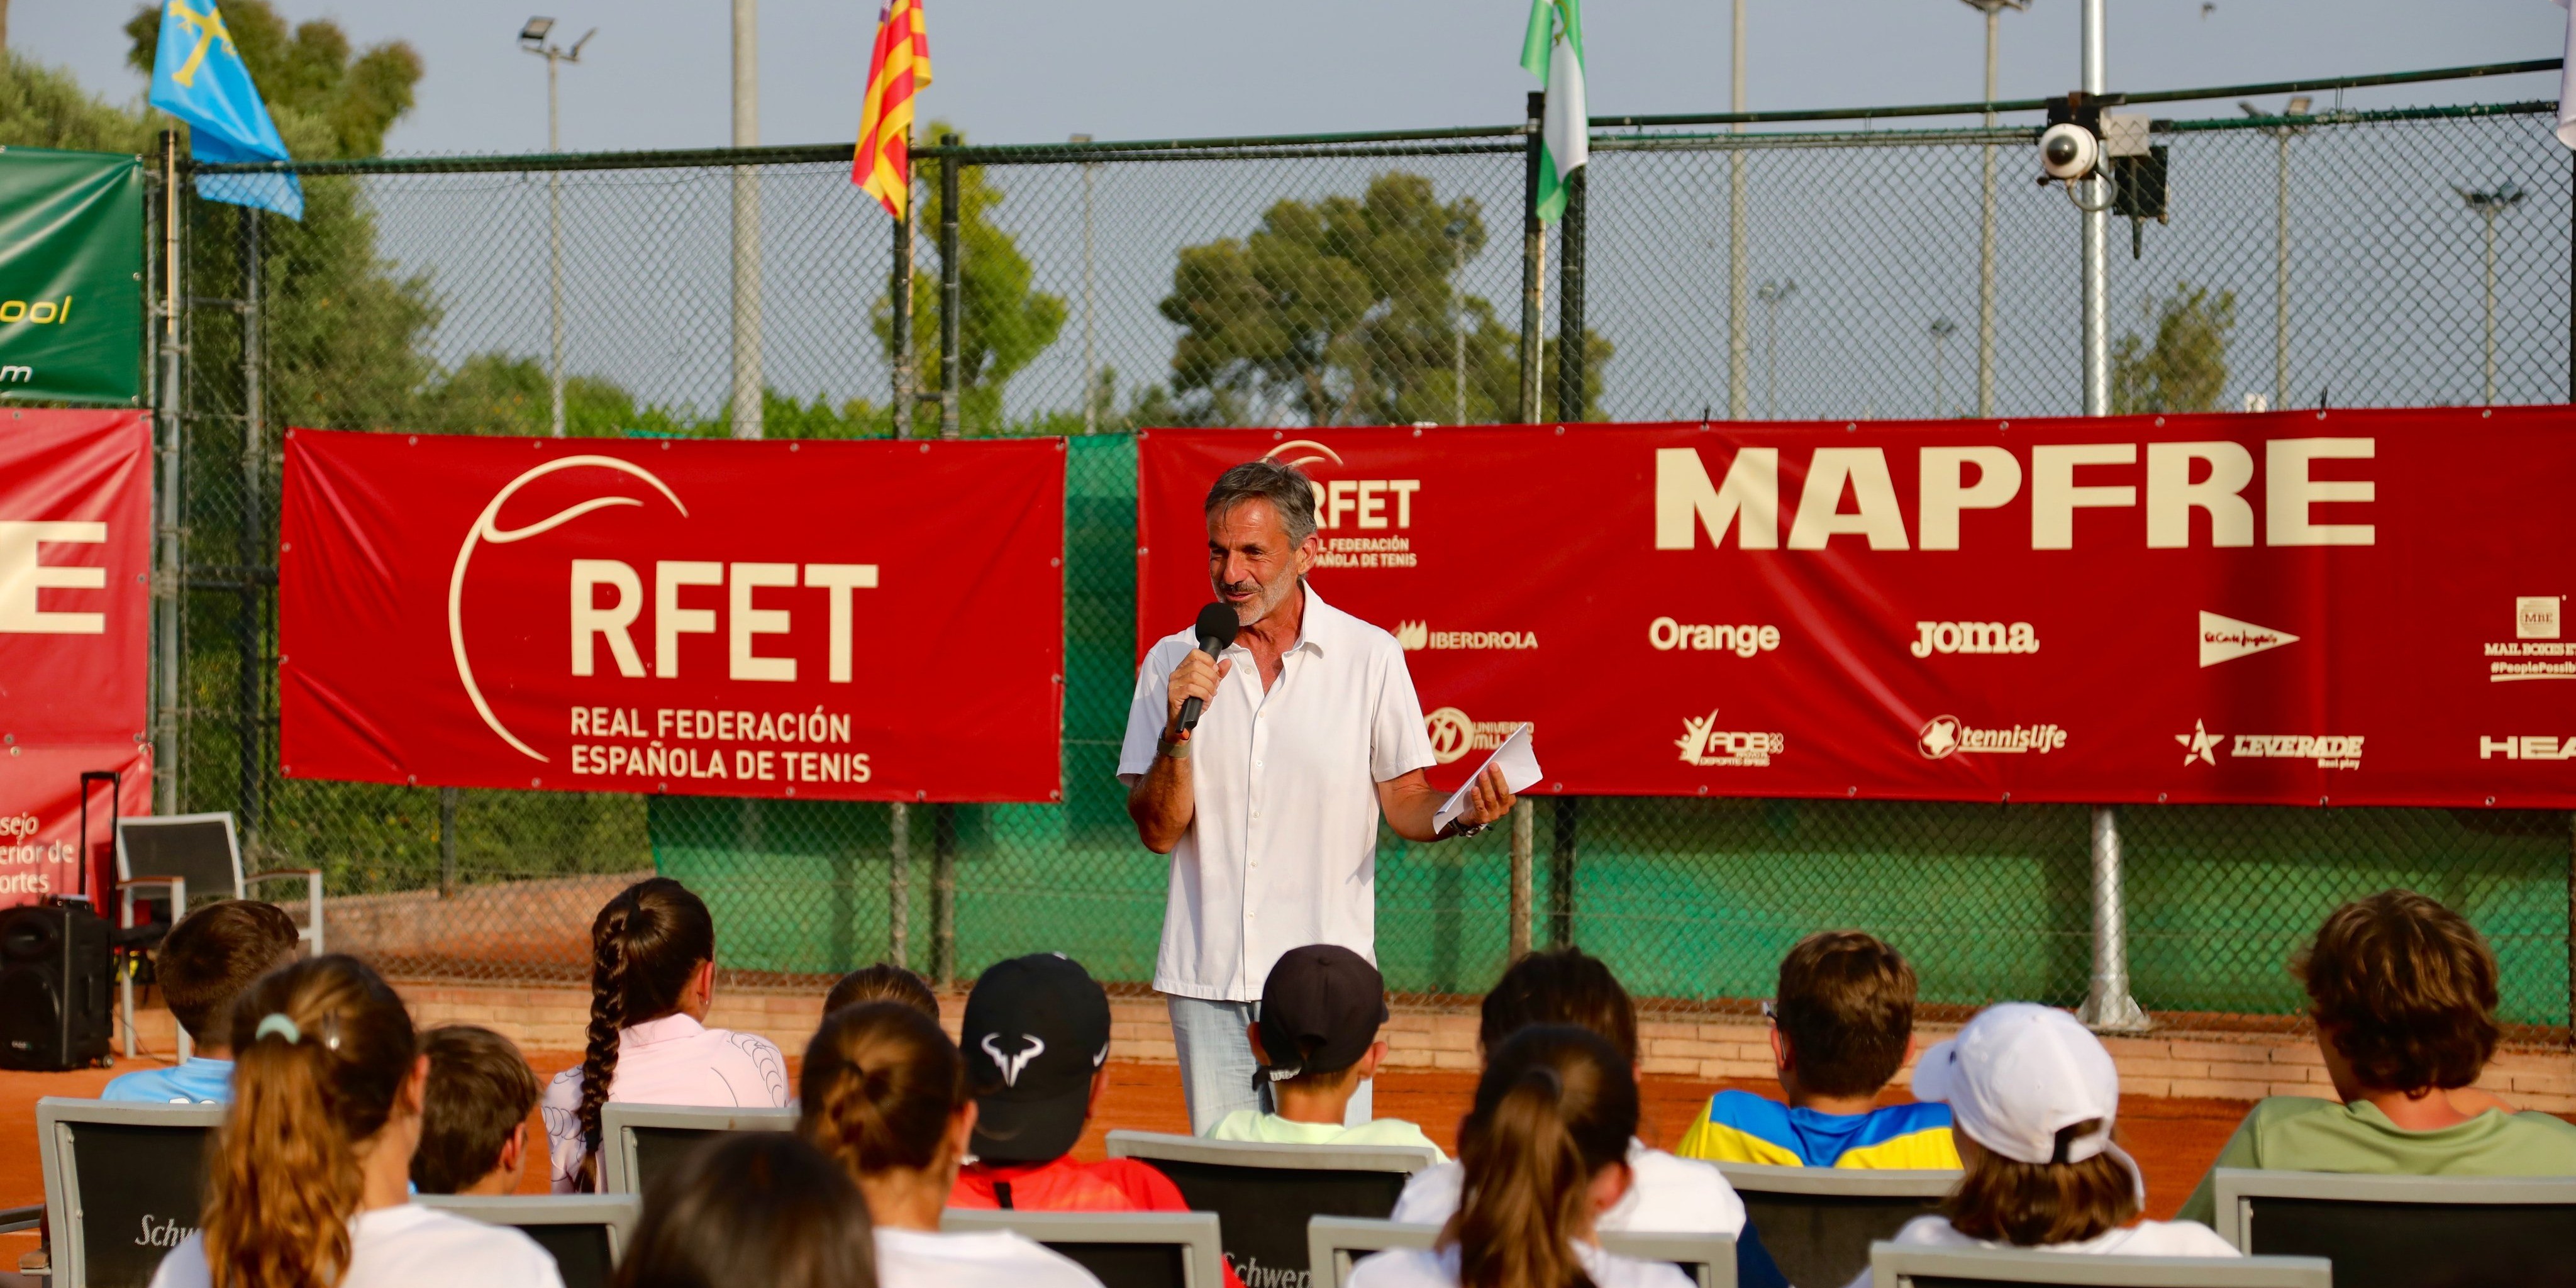 Emilio Sánchez Vicario delivers Keynote speech in CTO. Spain MAPFRE tennis Alevín.